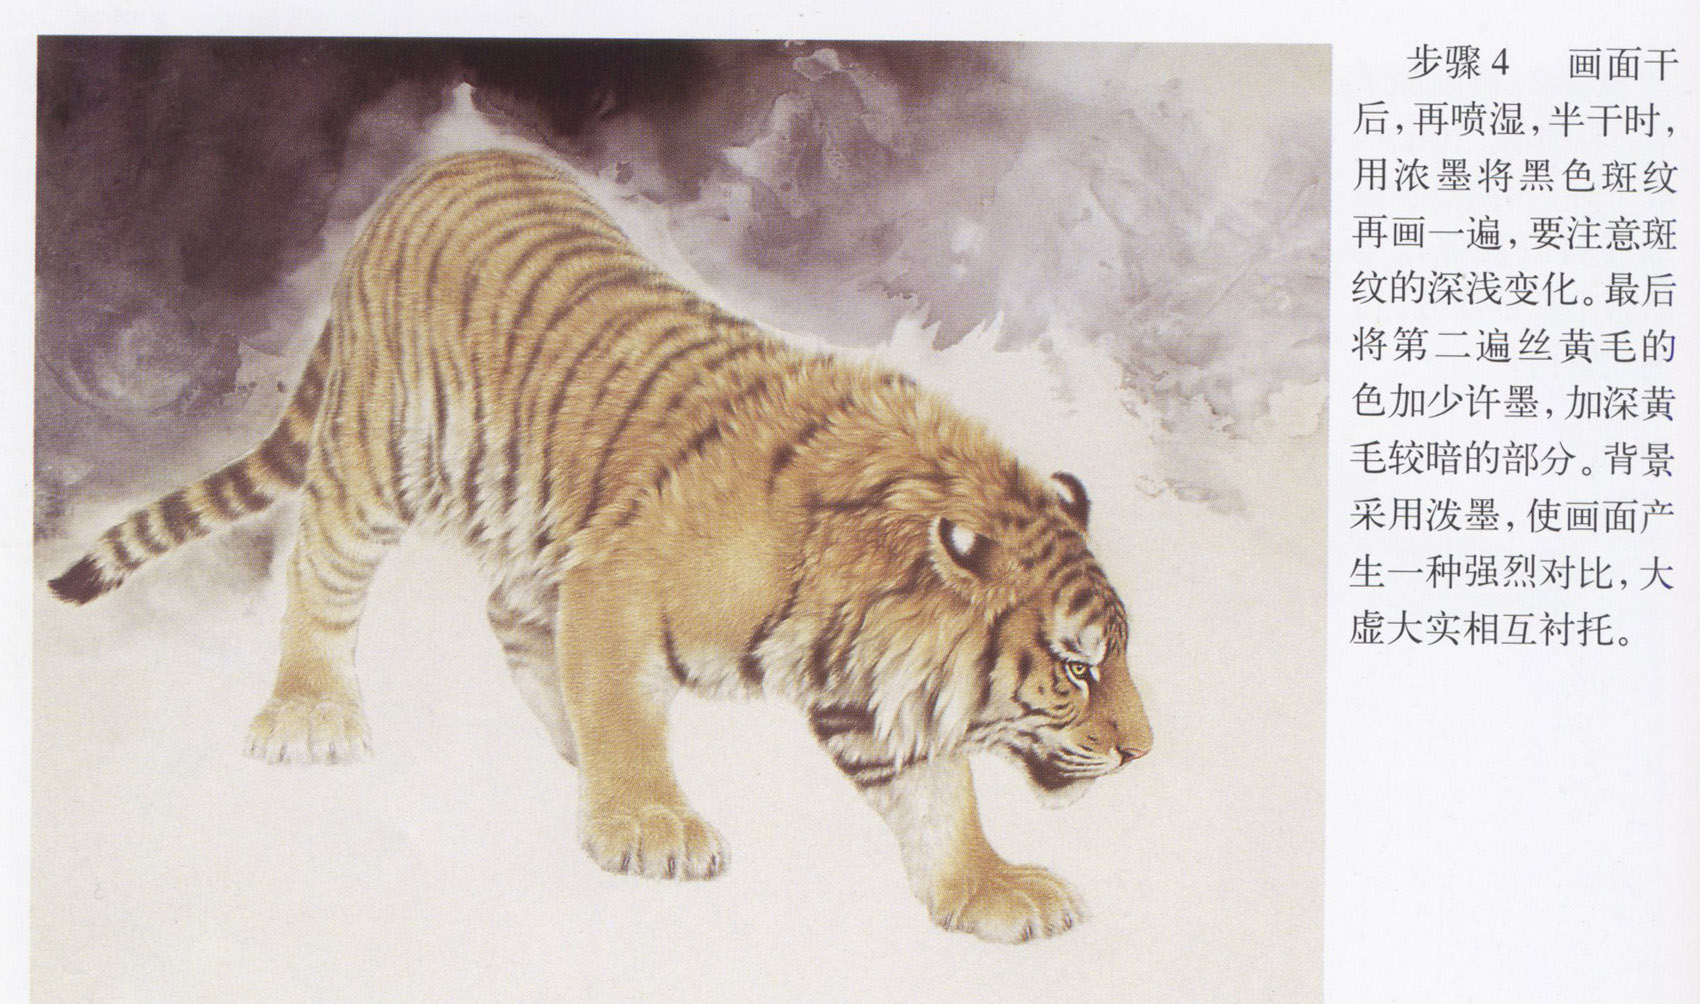 虎的湿画法国画动物皮毛技法有两种方法,一种批毛法,一种是丝毛法!